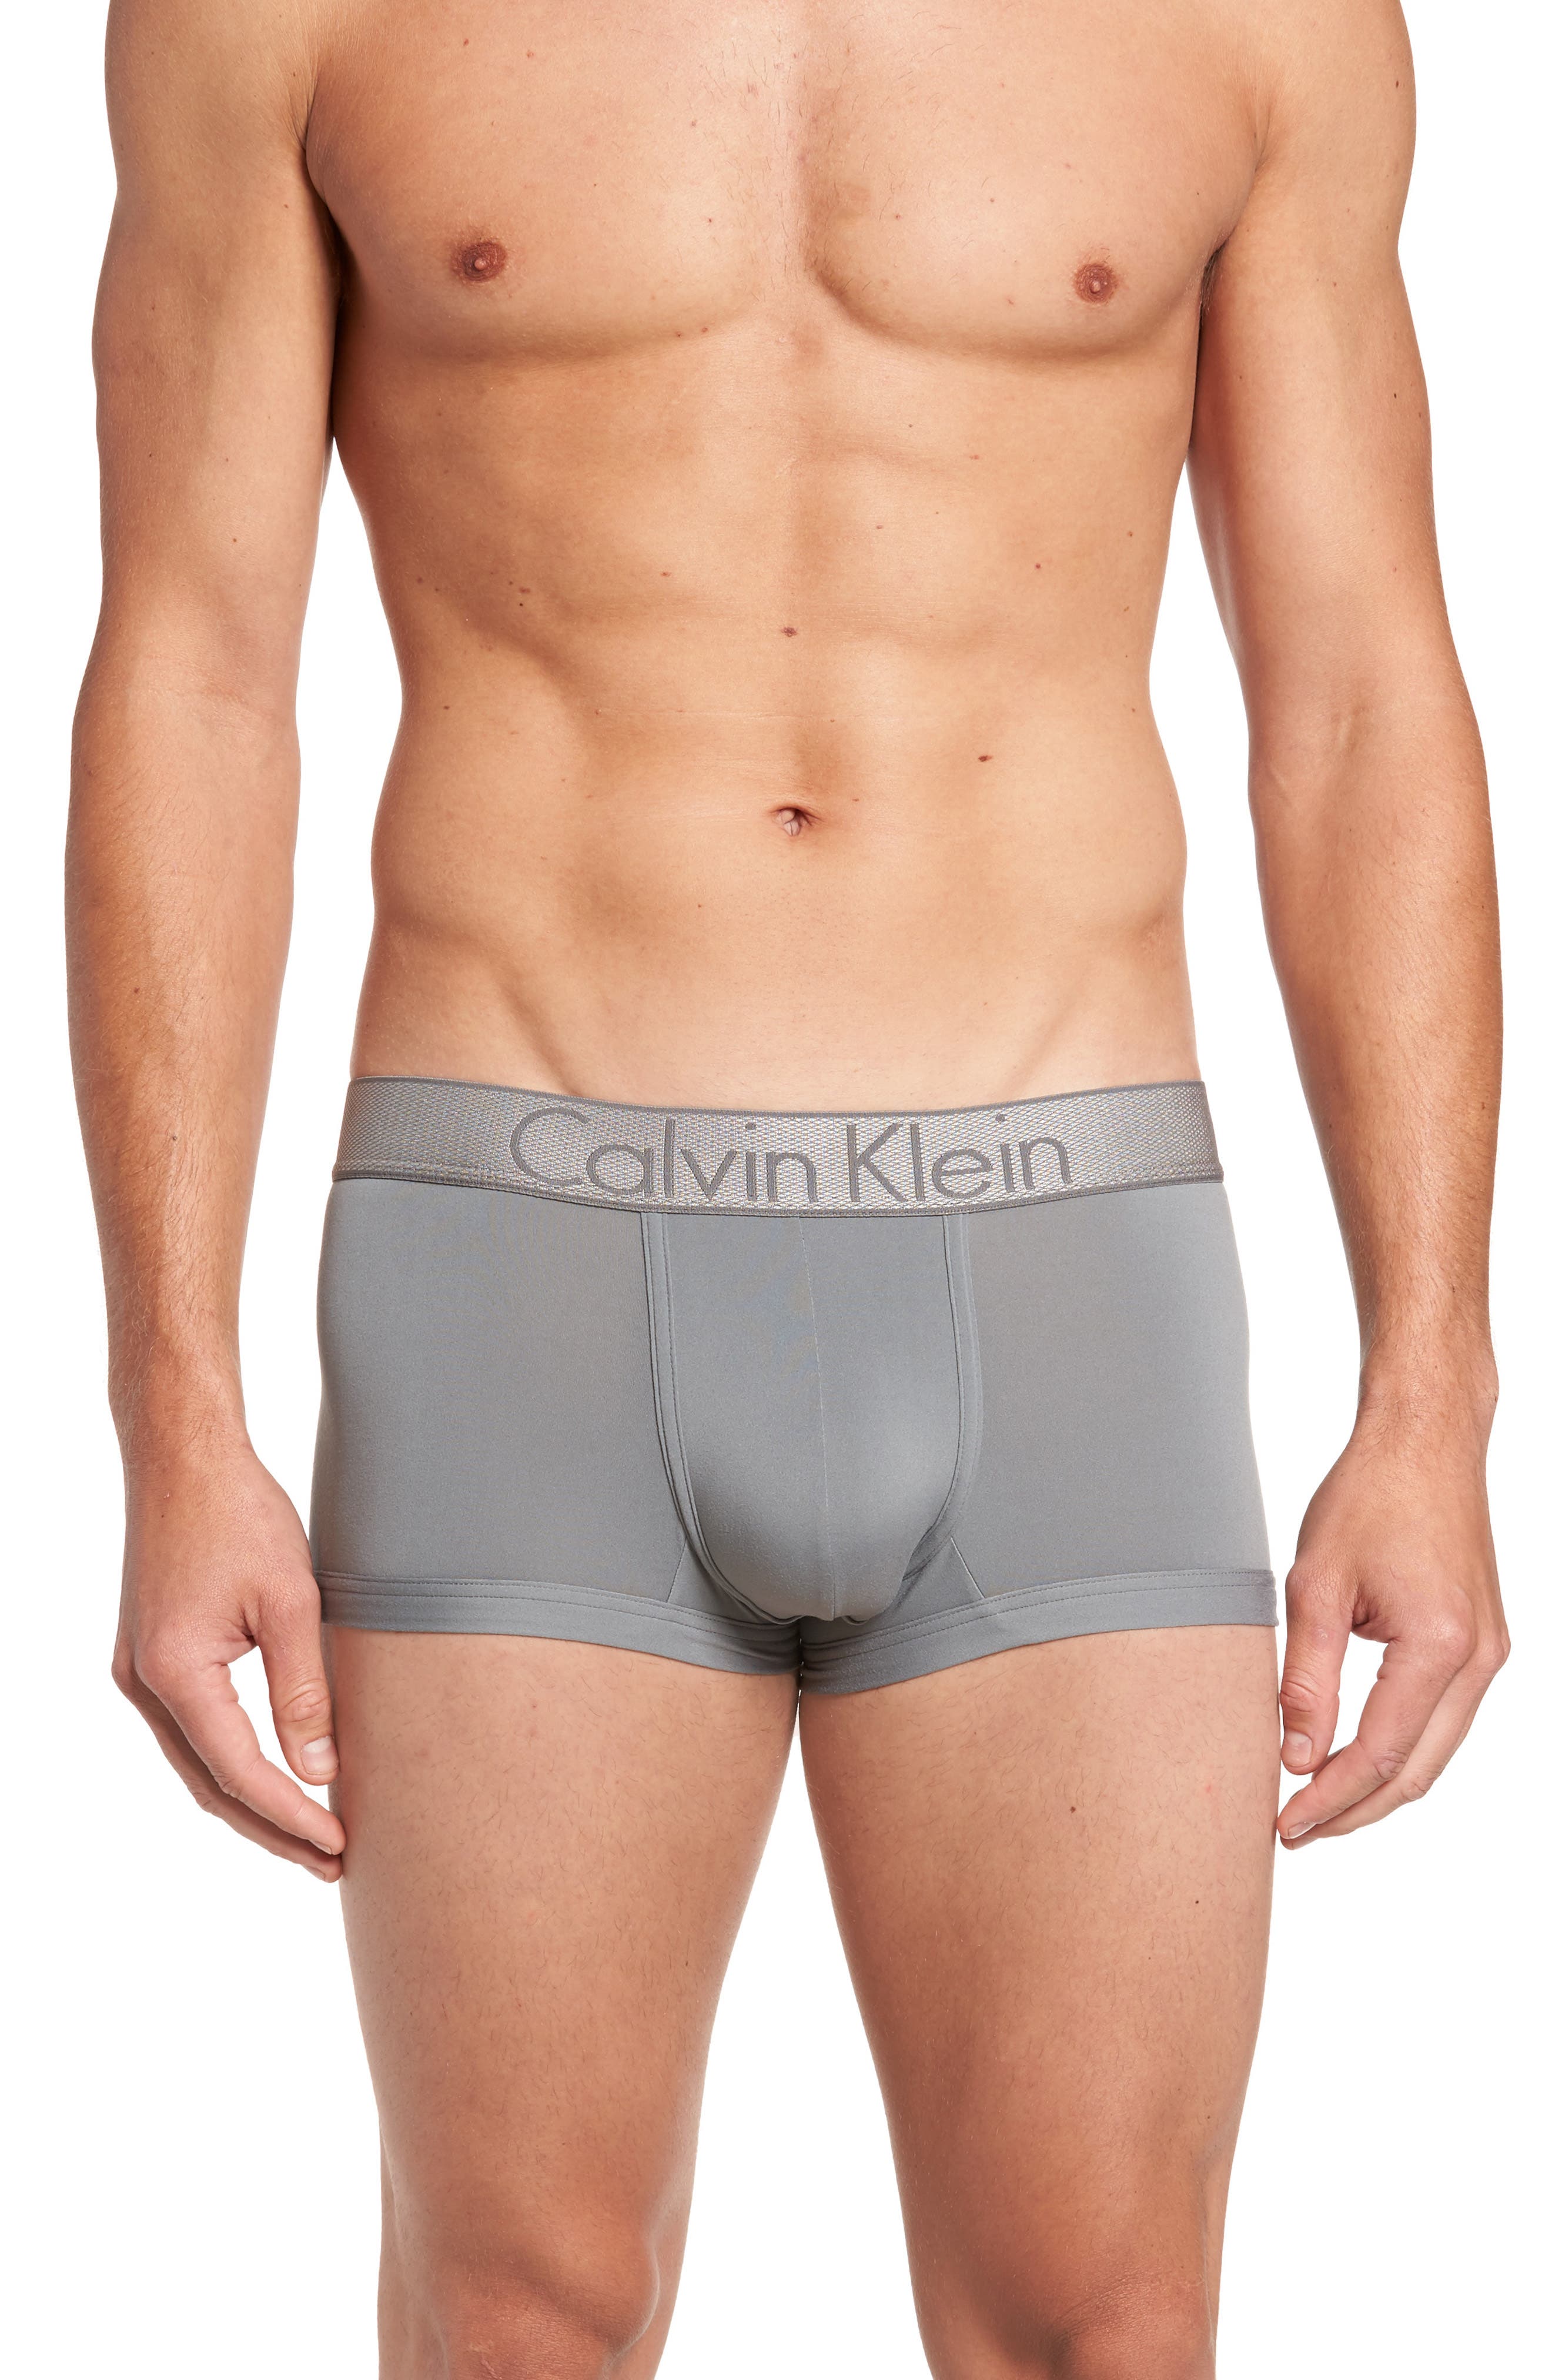 calvin klein underwear men near me